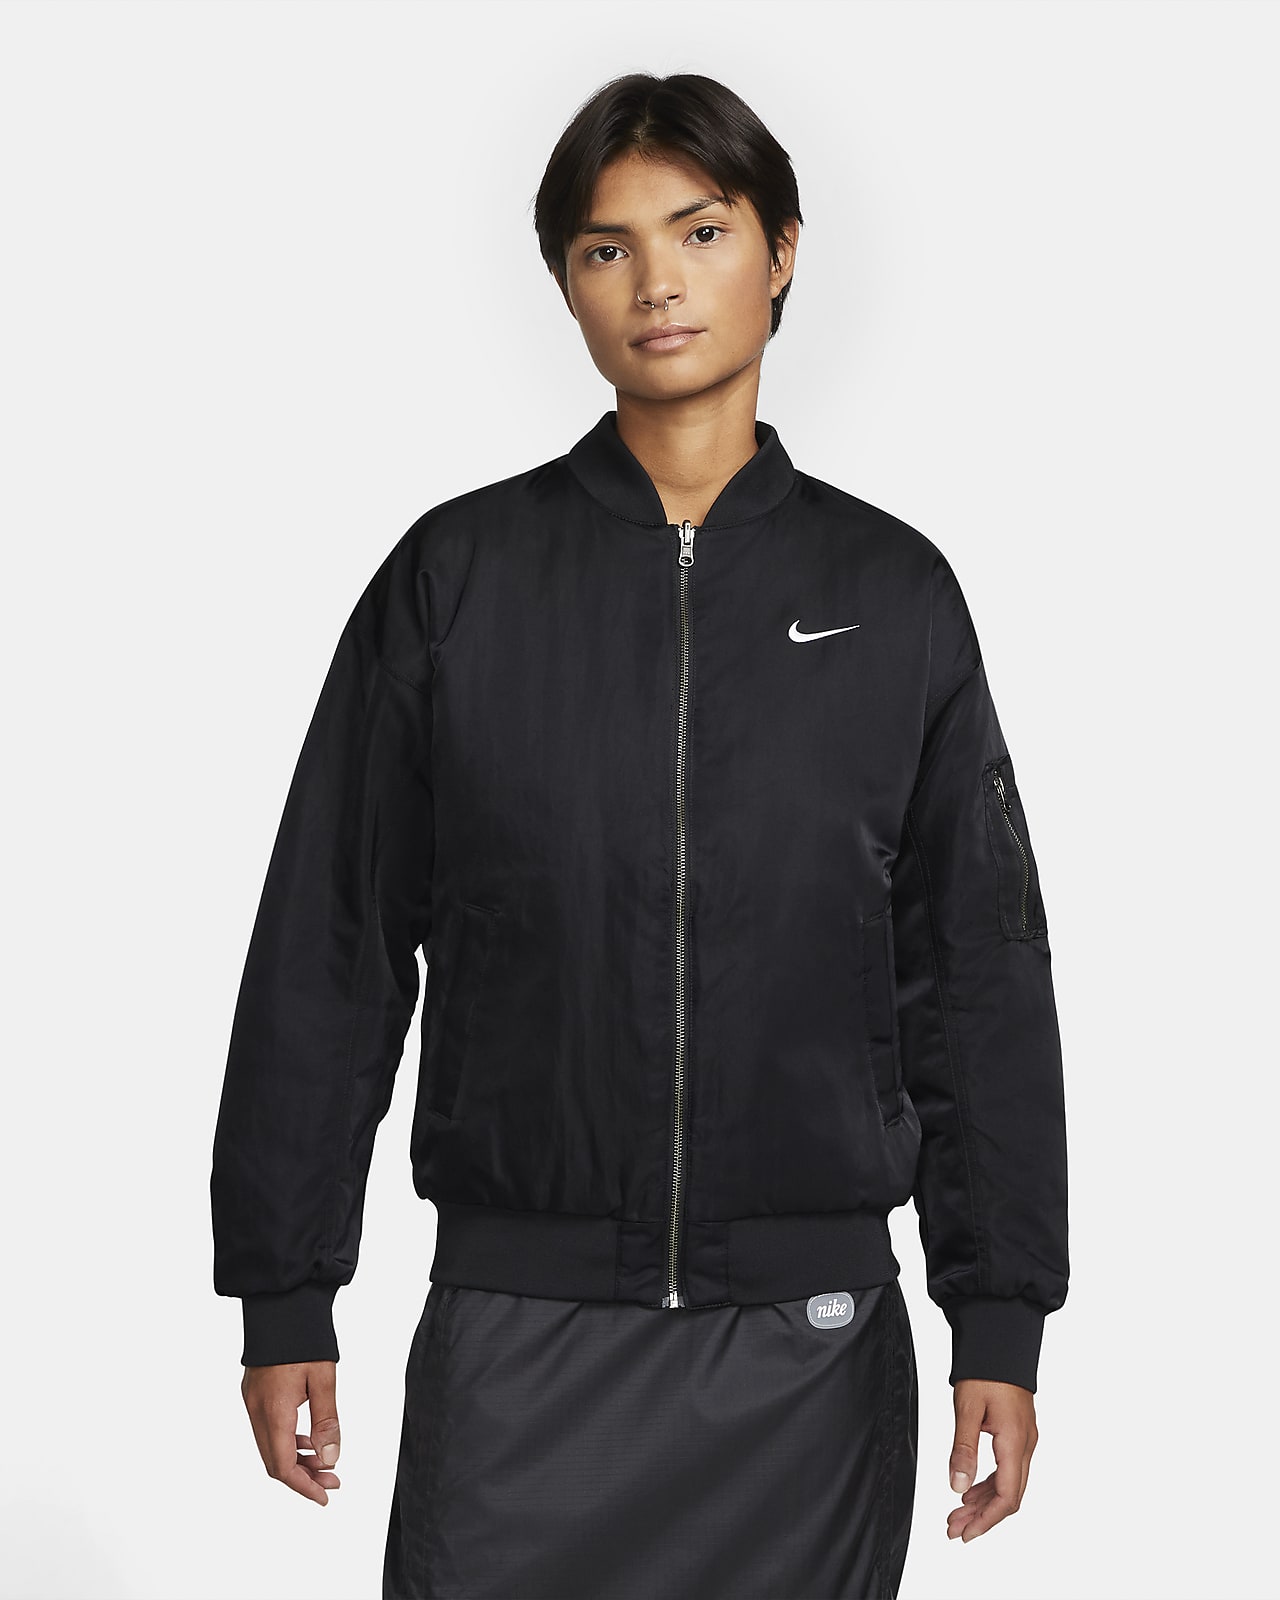 Γυναικείο κολεγιακό bomber τζάκετ διπλής όψης Nike Sportswear